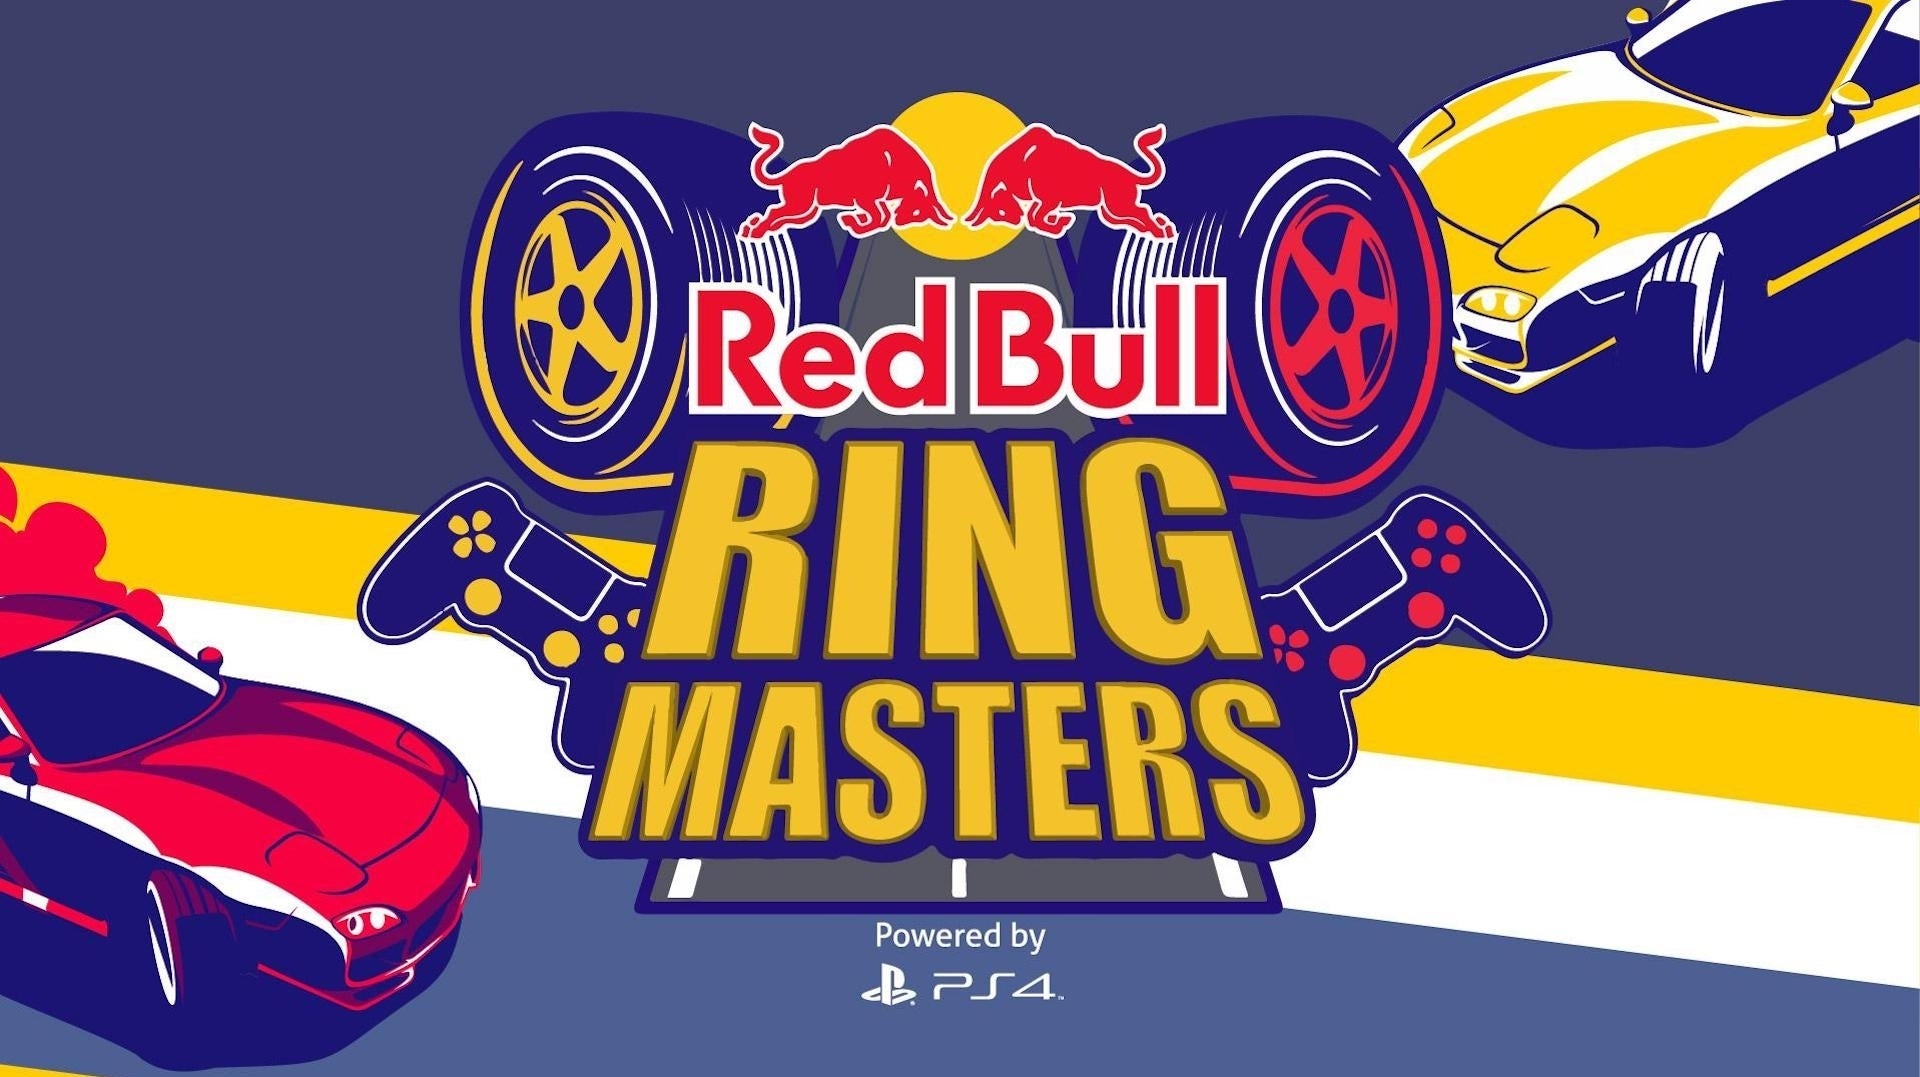 Immagine di Gran Turismo Sport protagonista della sfida virtuale per piloti in erba Red Bull Ring Masters